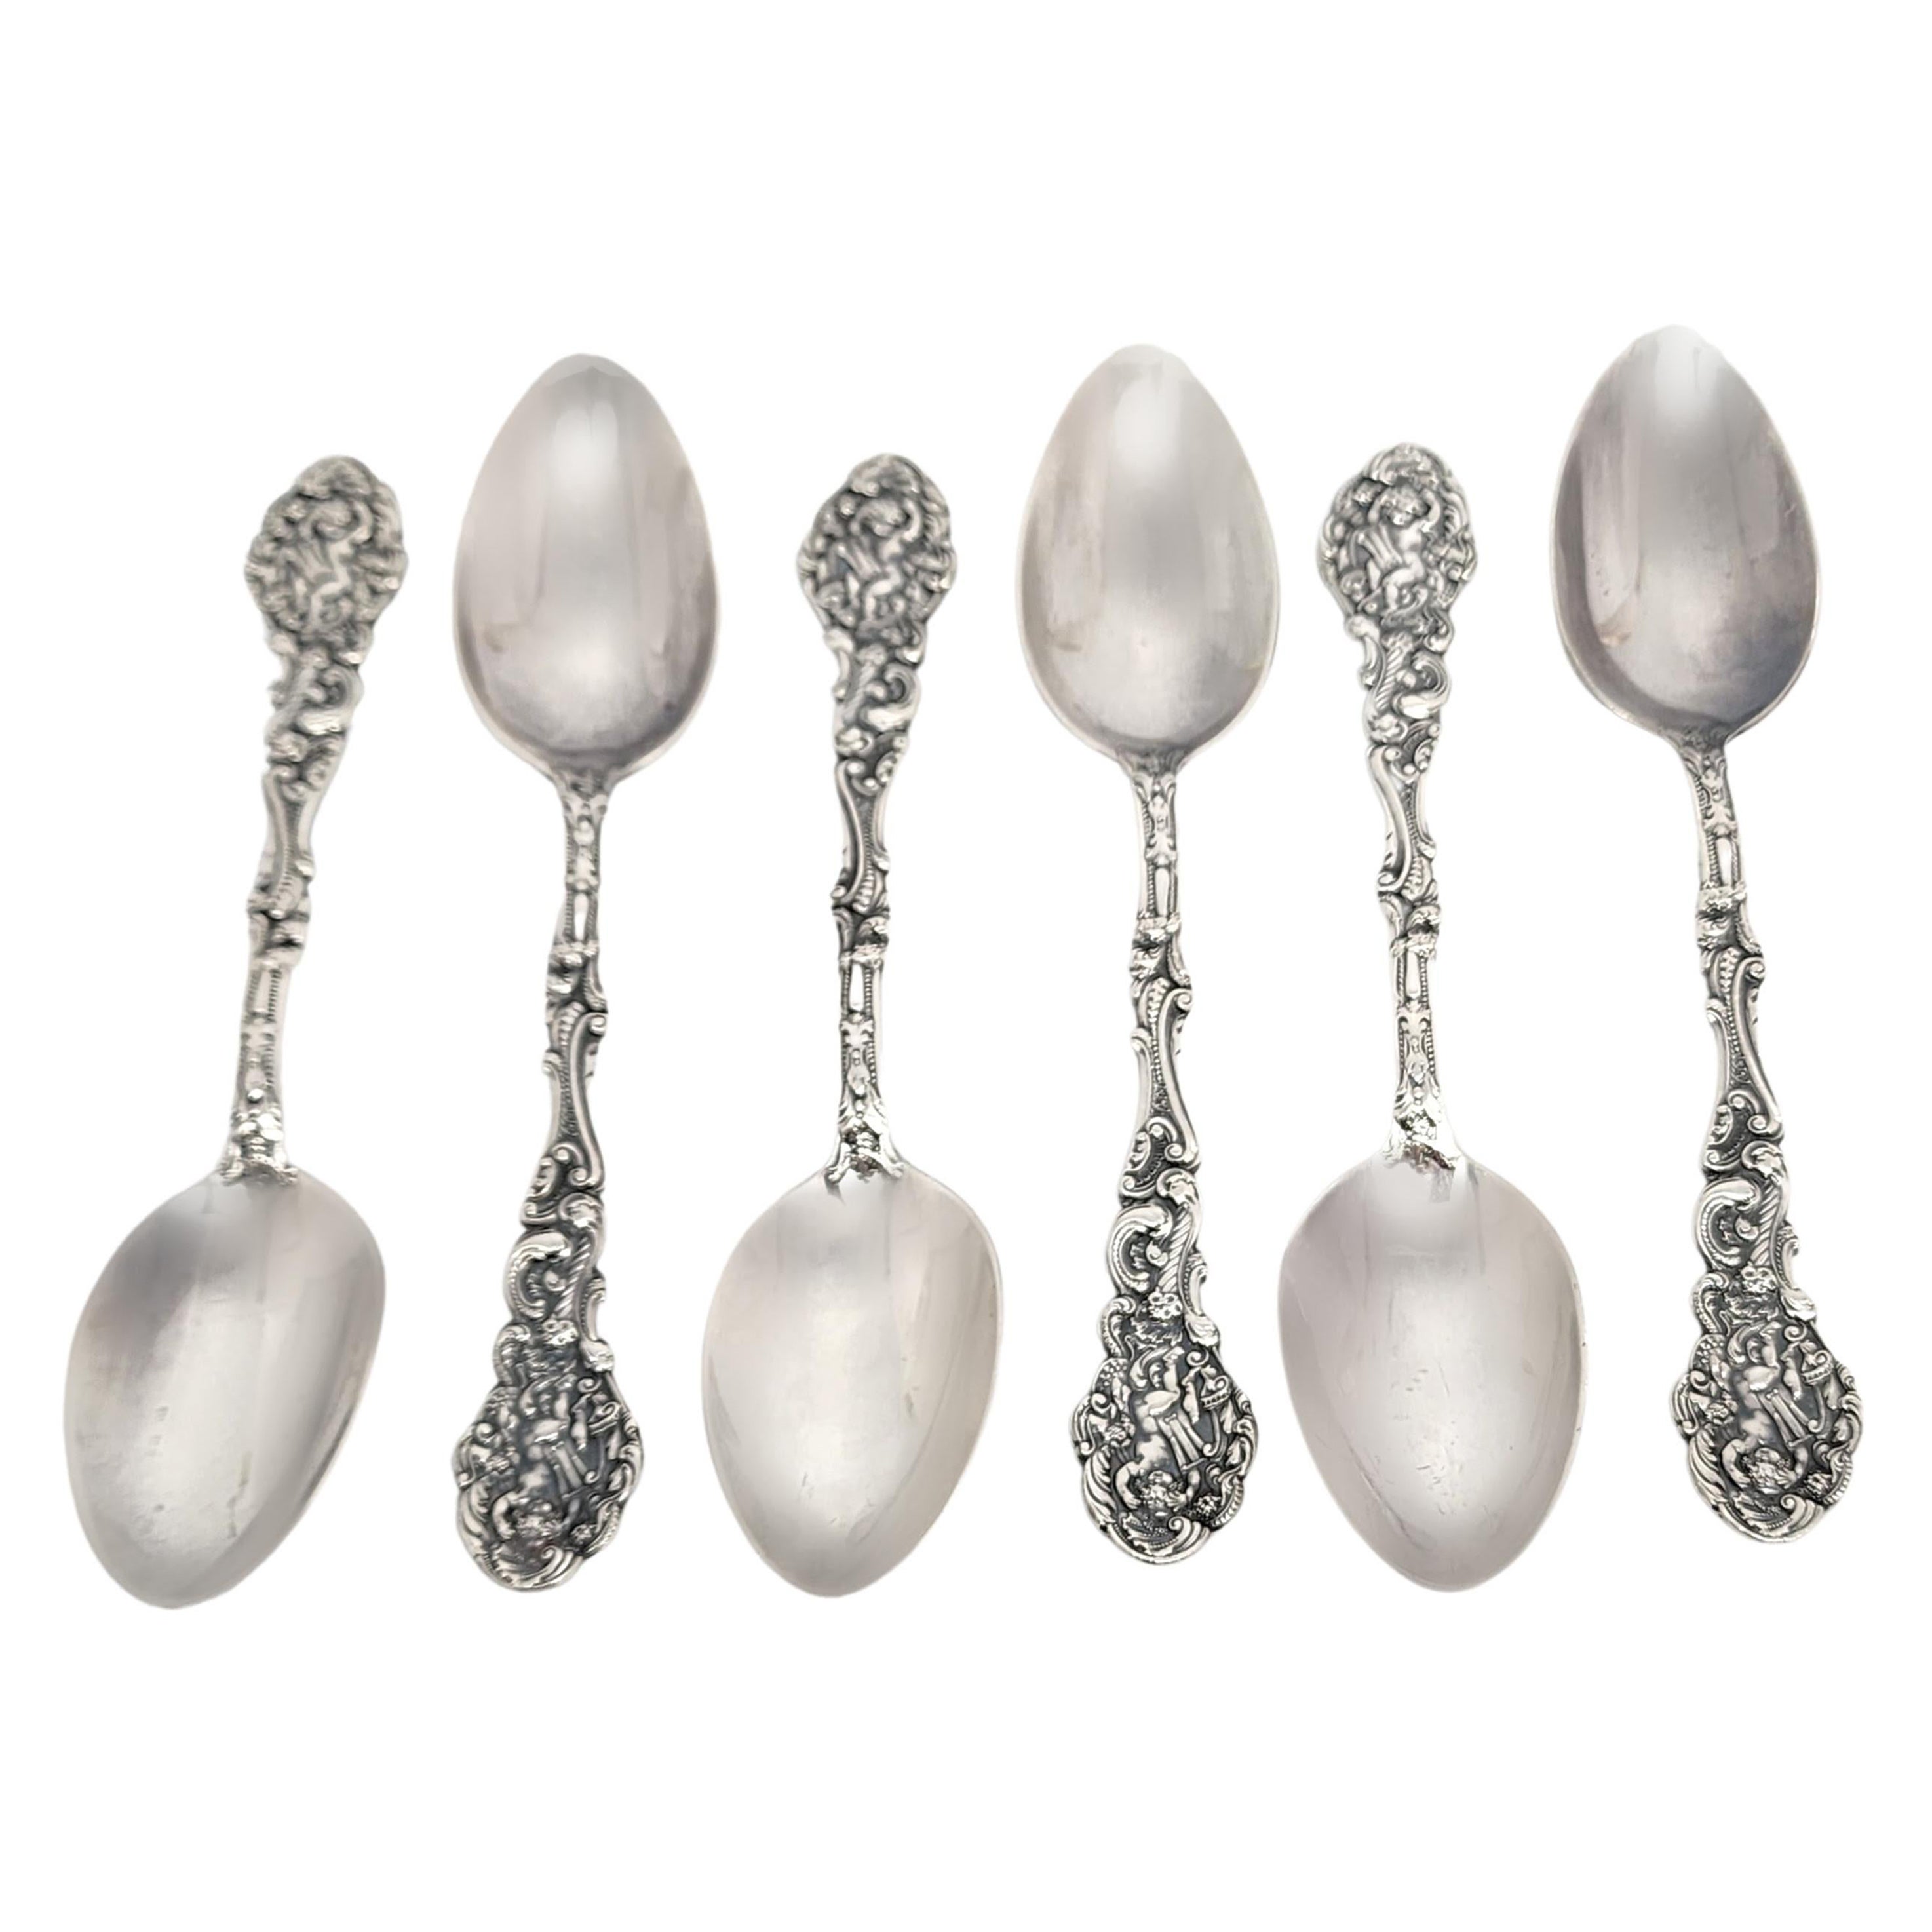 Set of 6 Gorham Versailles Sterling Silver Teaspoons